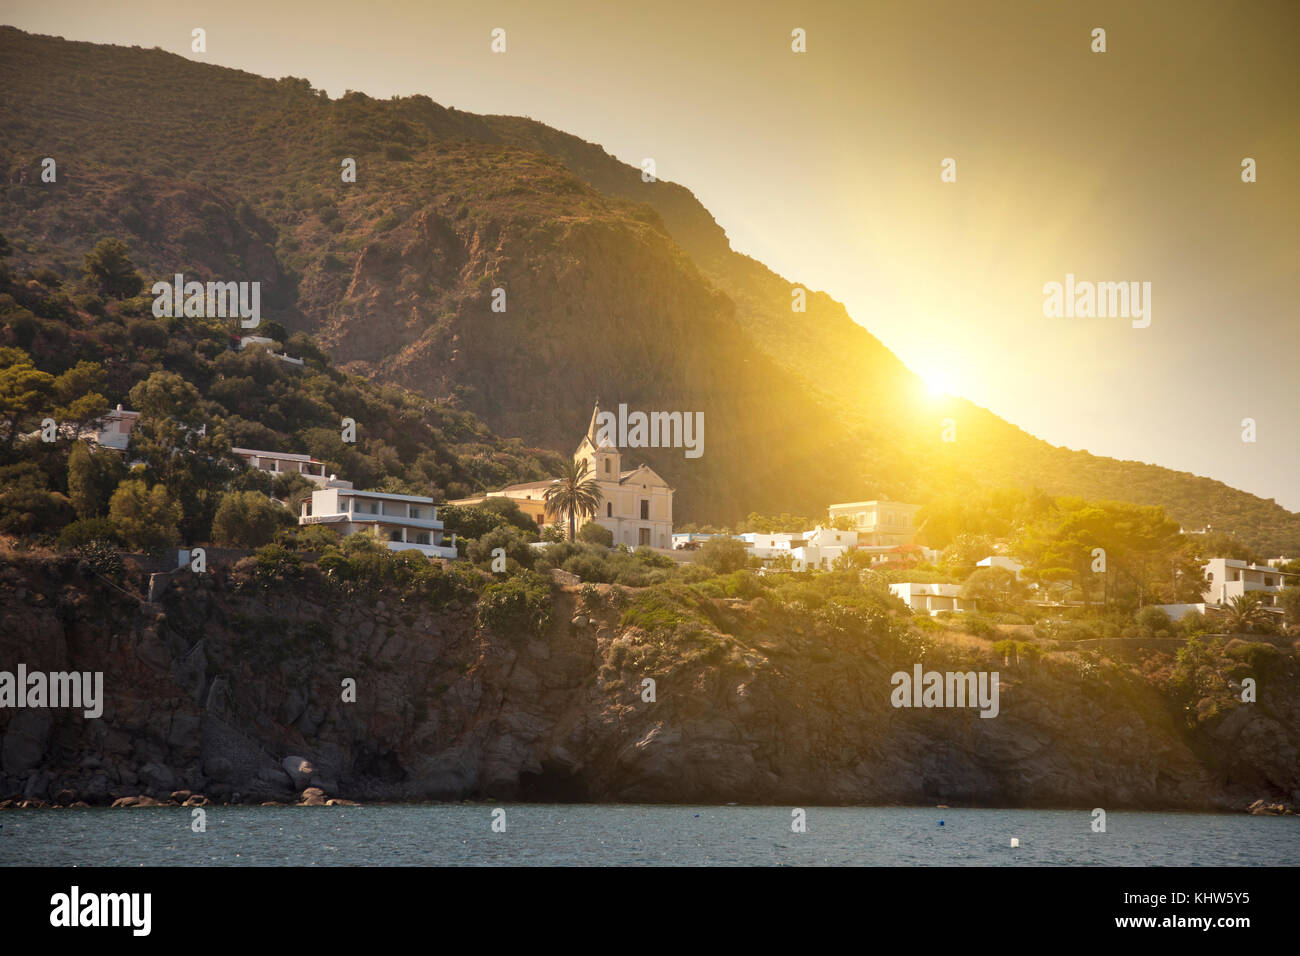 Coastal town, Panarea, Messina, Italy Stock Photo